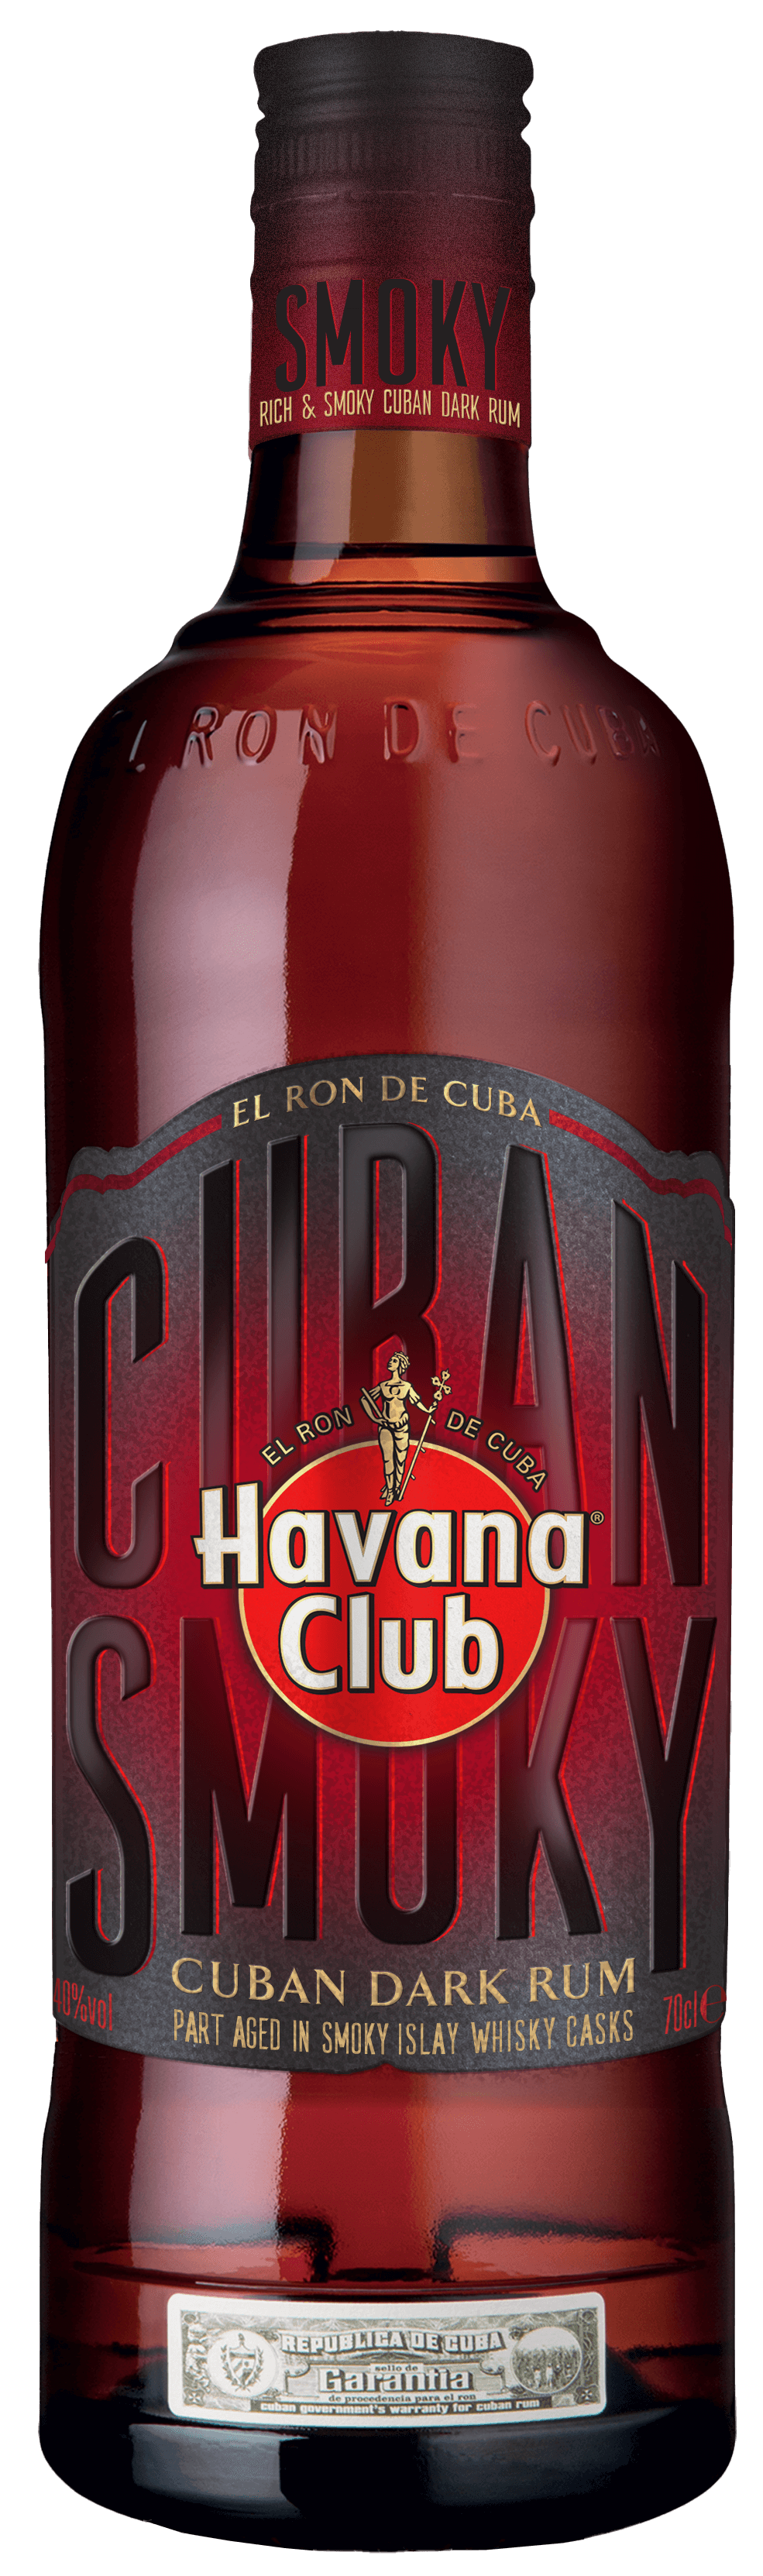 Ron añejado en barricas de whisky Havana Club Smoky | Havana Club